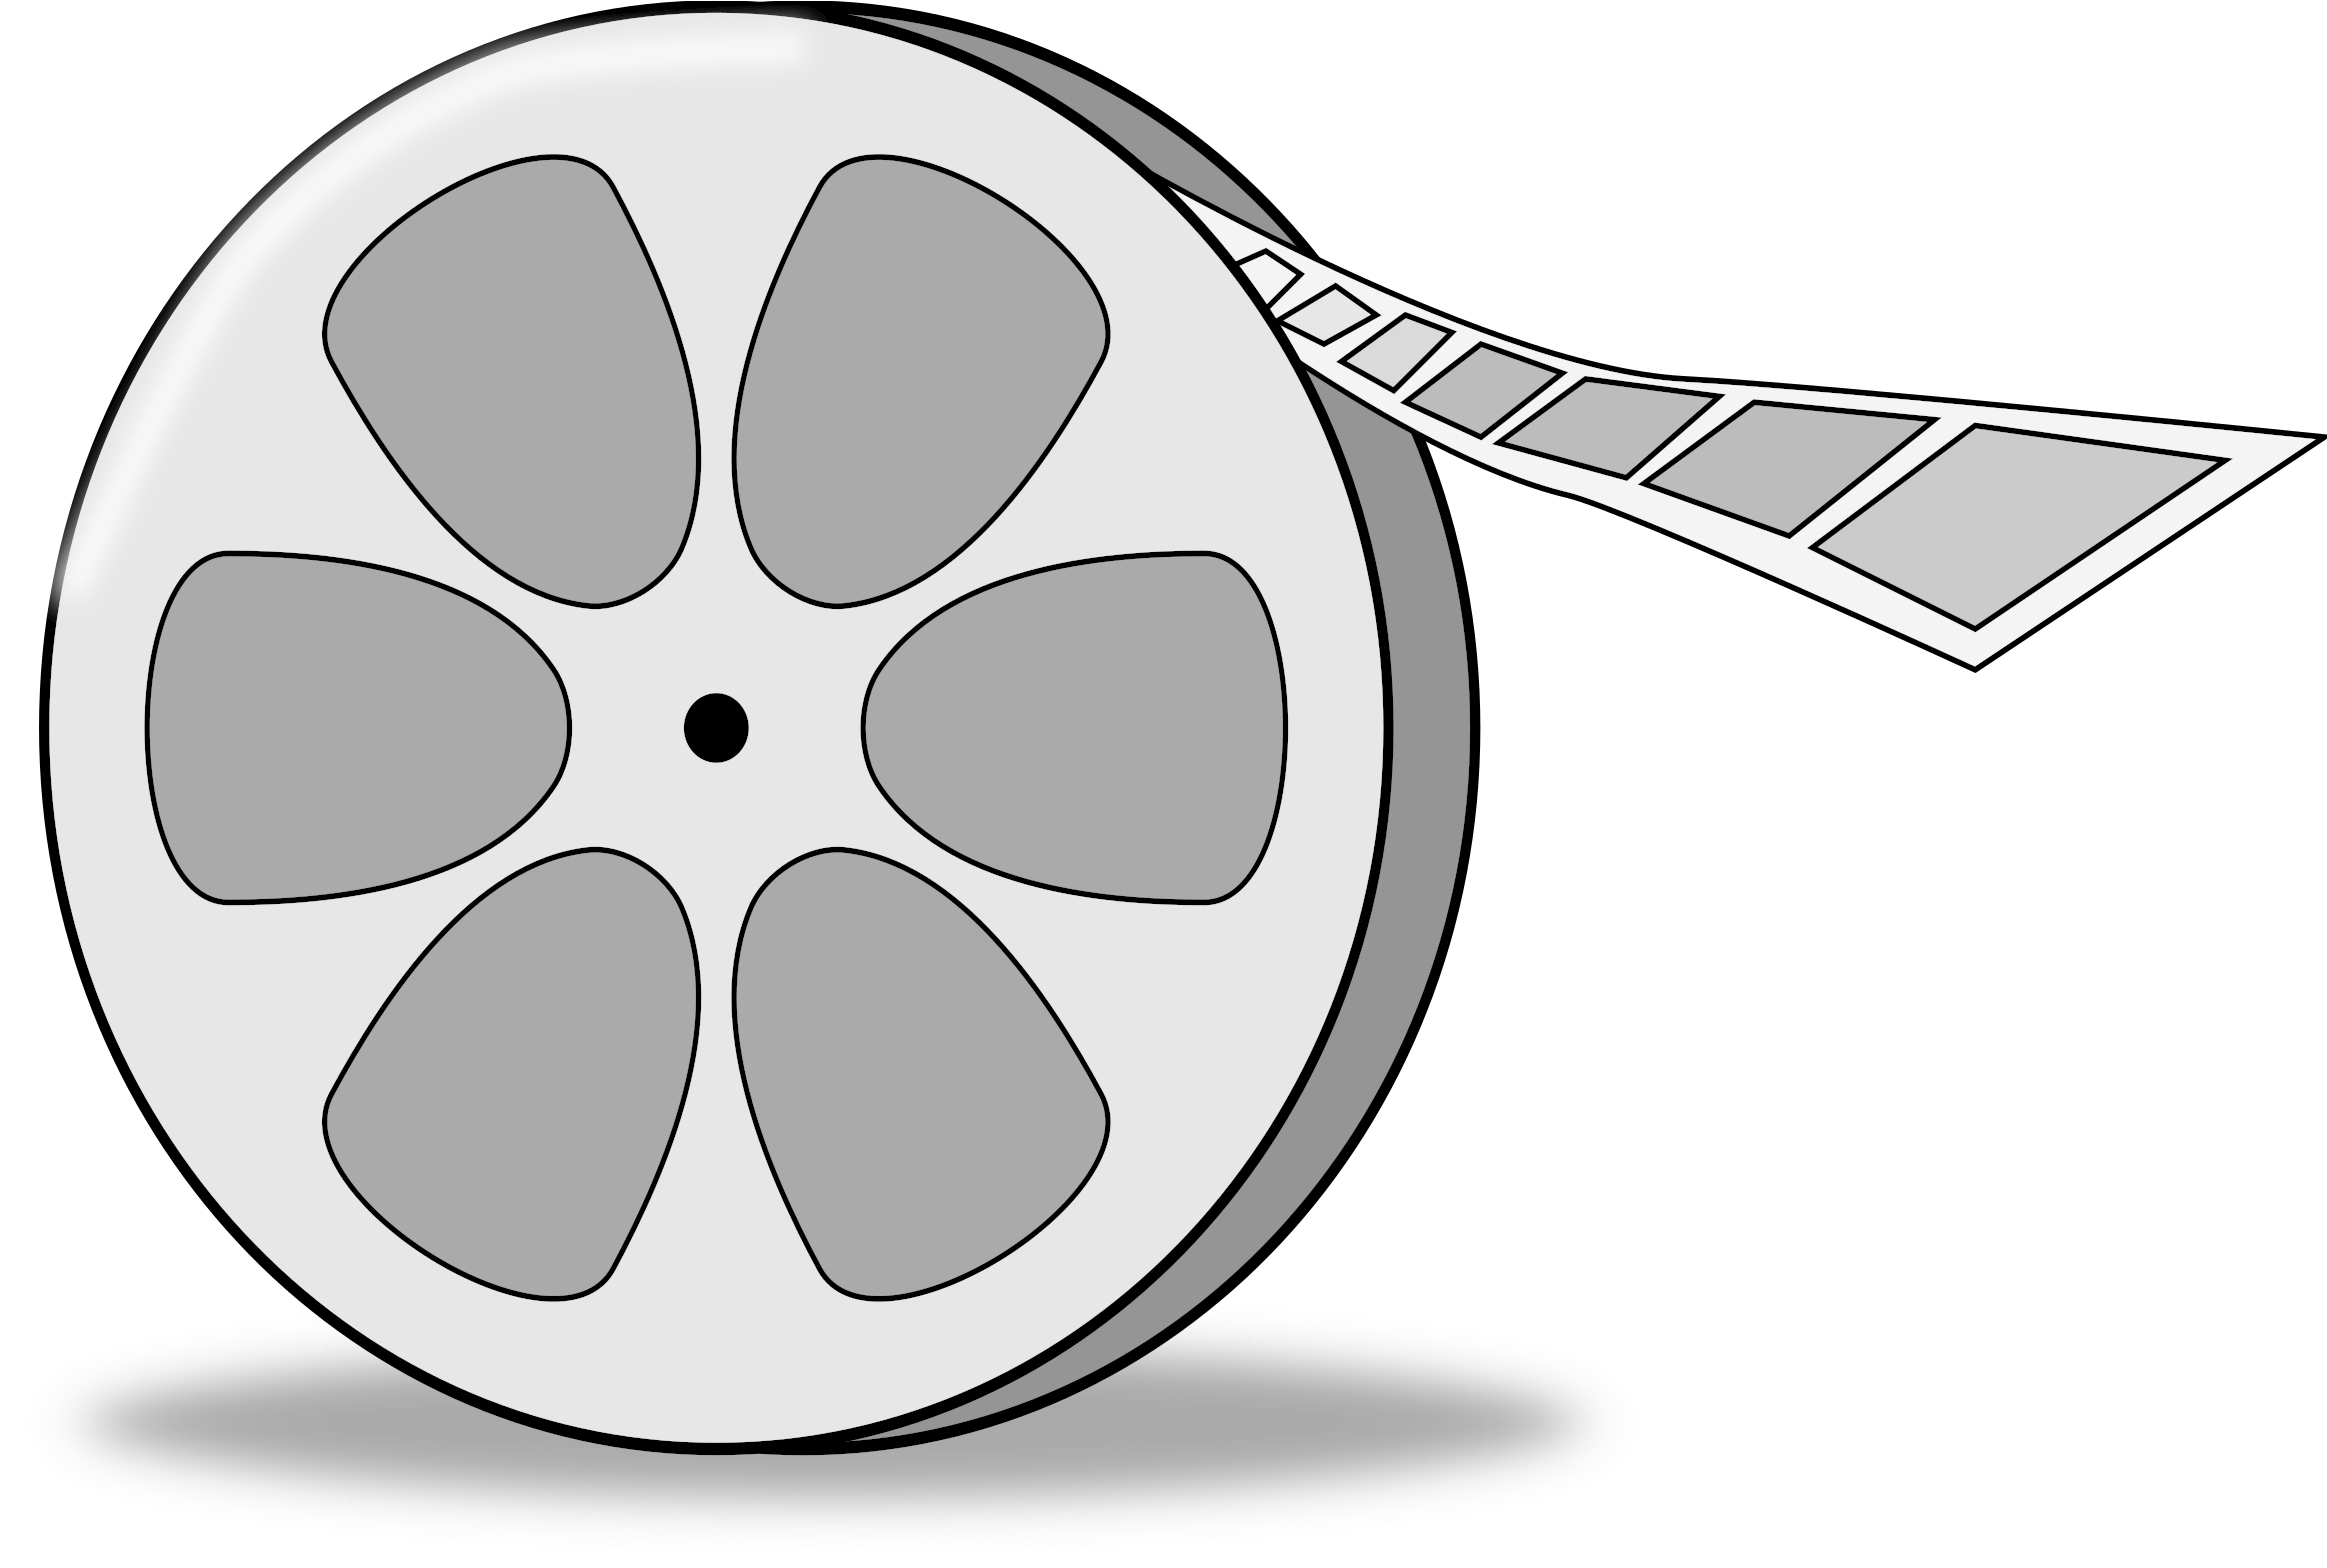 ฟิล์มรีลภาพยนตร์โปรเจคเตอร์ม้วน PNG โปร่งใส